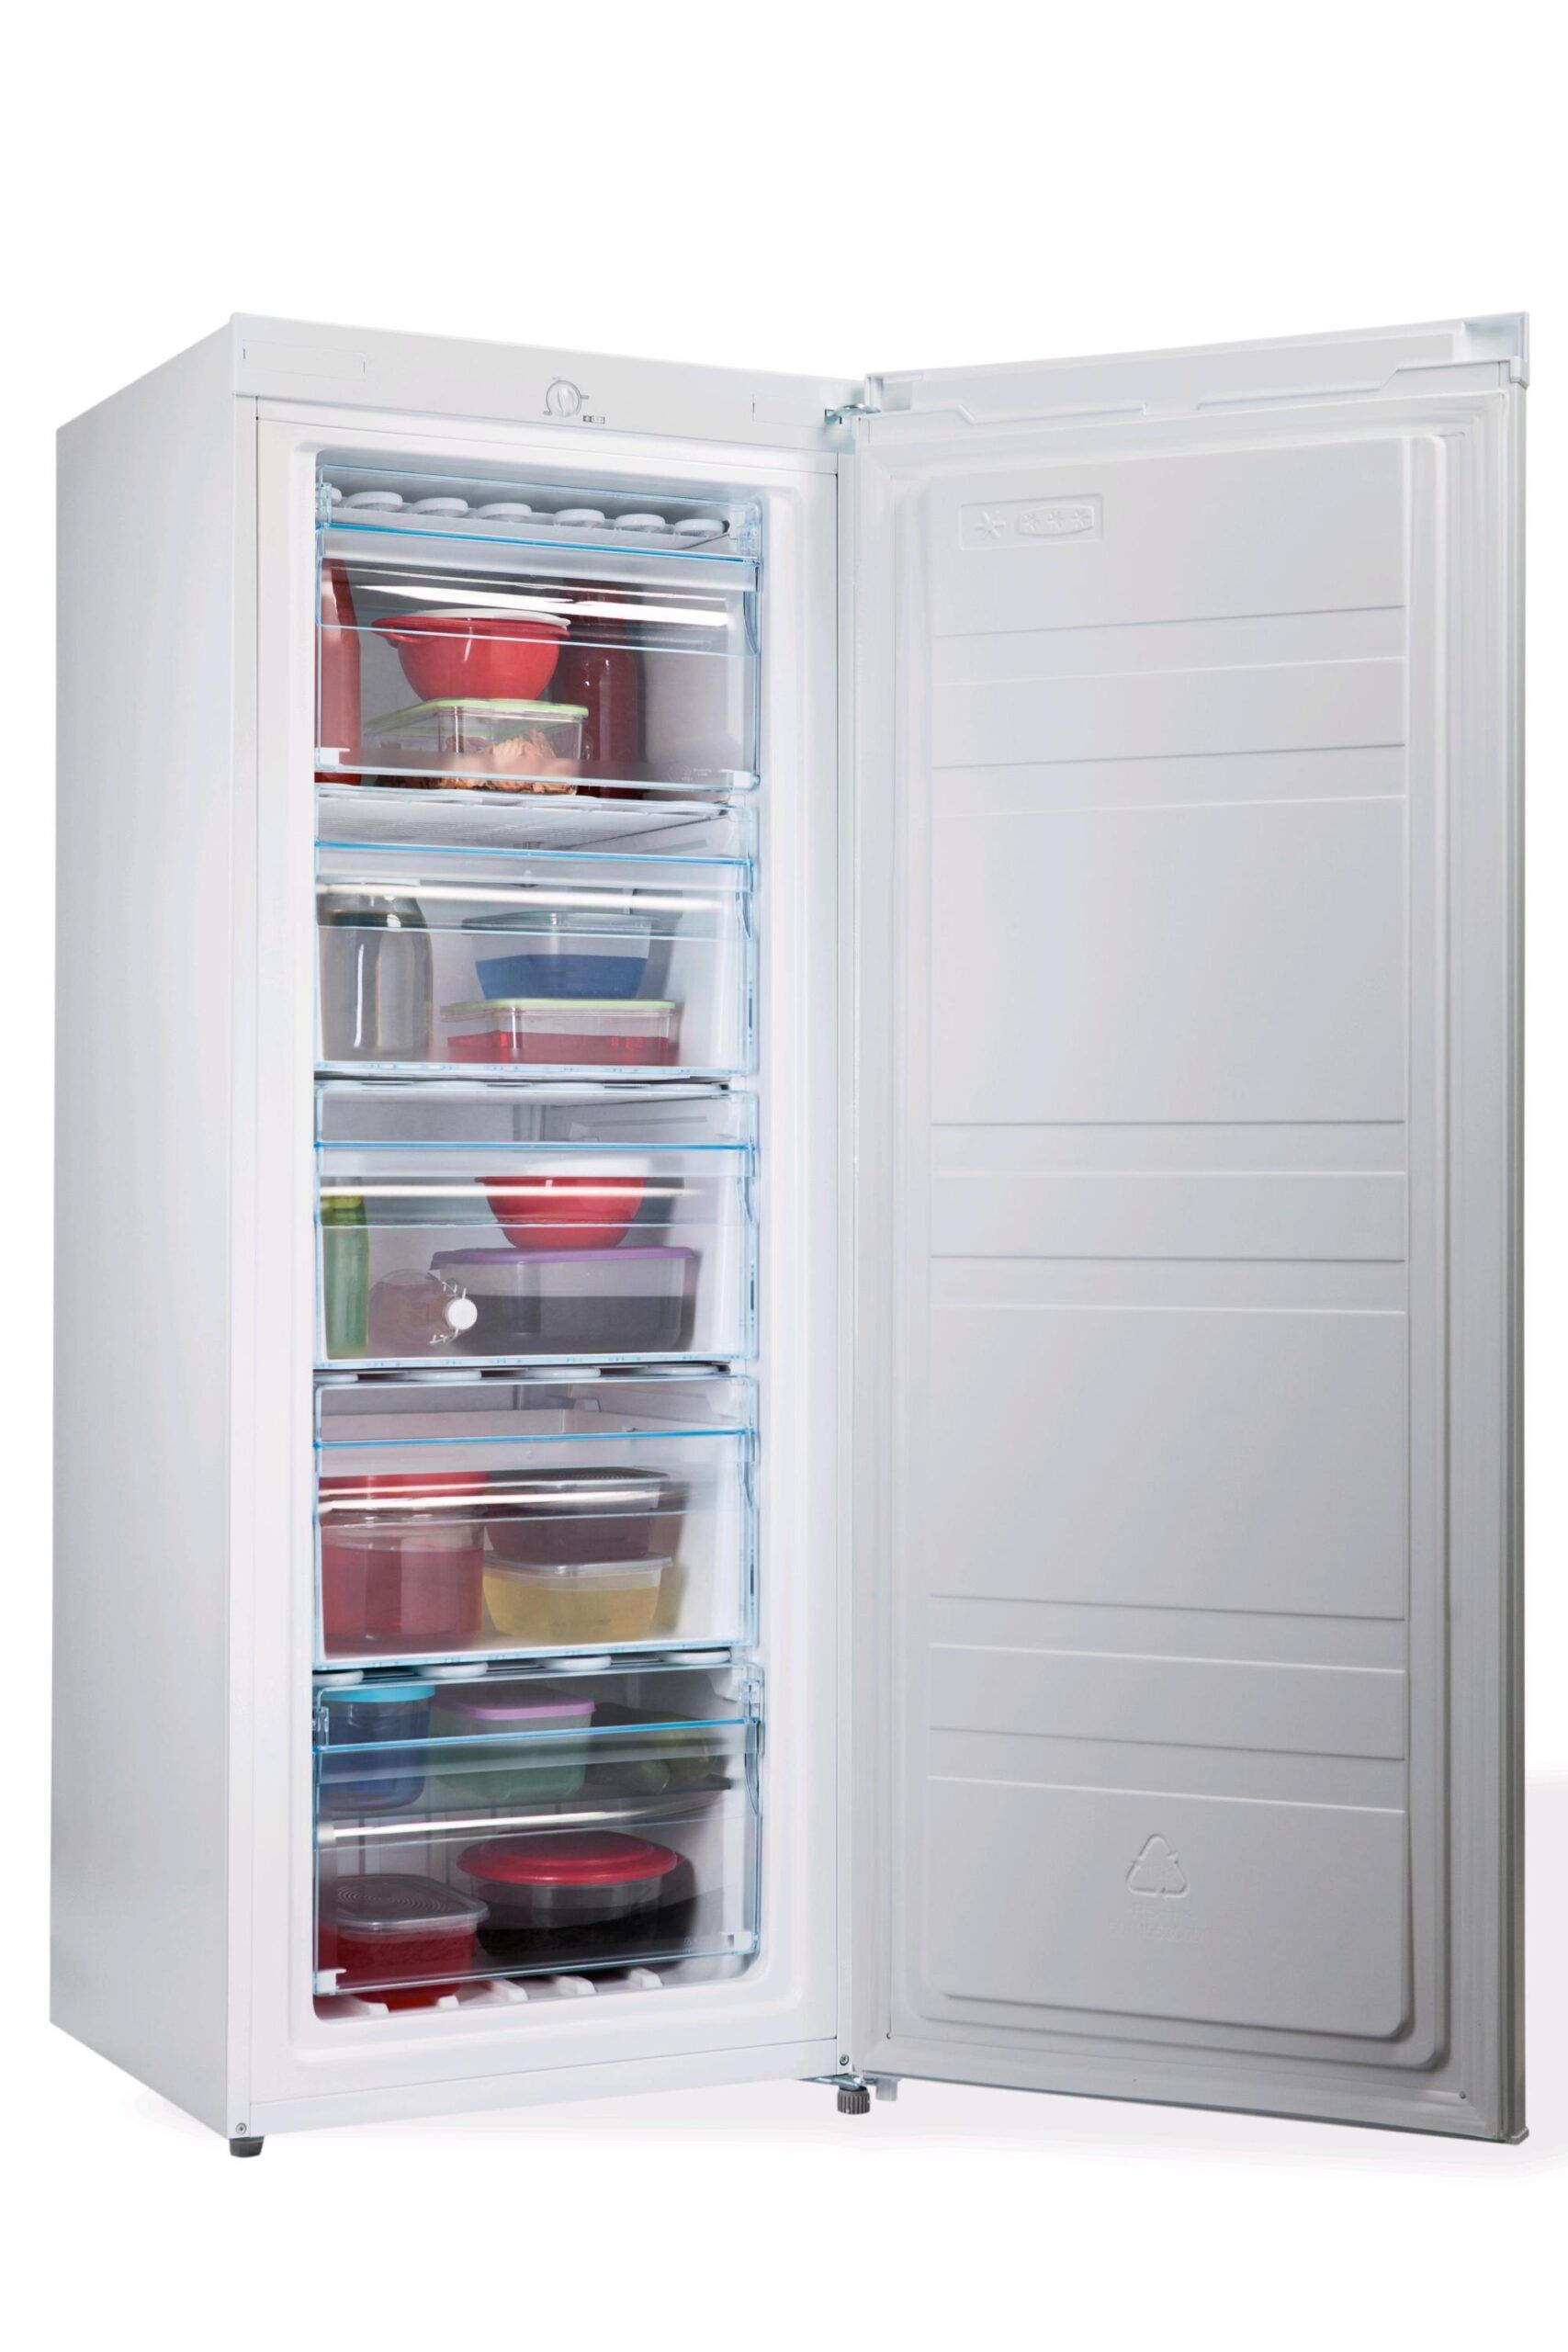 PremierTech® PremierTech PT-FR153 Congelatore Verticale Freezer 160 litri -24°gradi Classe E (ex A++) 4**** Stelle 3 Cassetti e 2 Sportelli